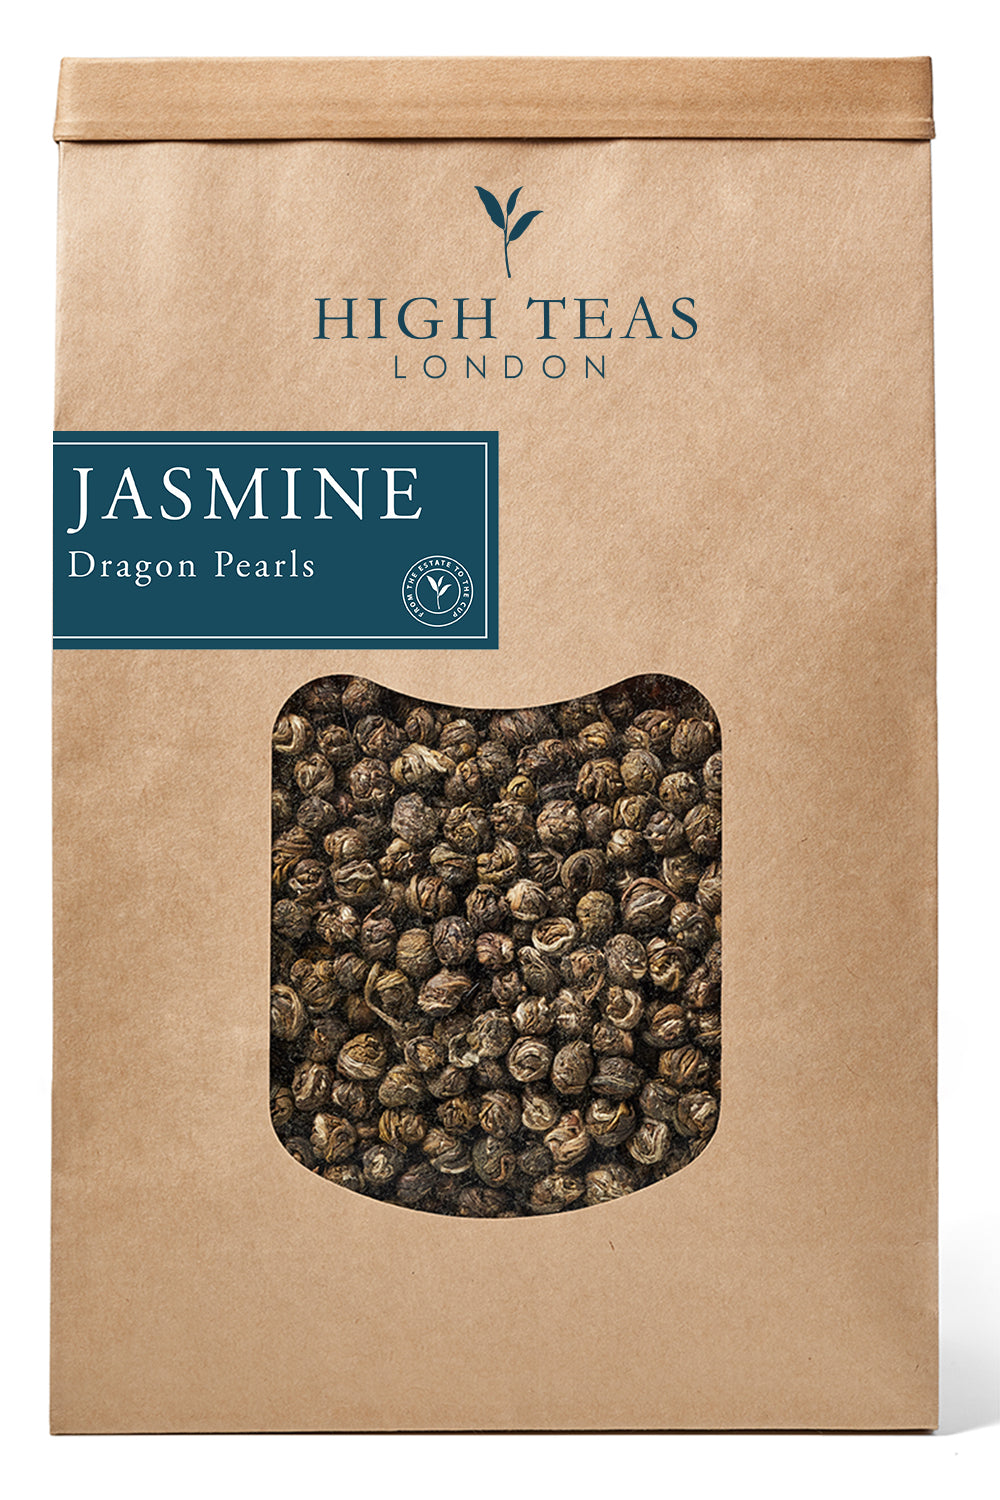 Jasmine Dragon Pearls-500g-Loose Leaf Tea-High Teas